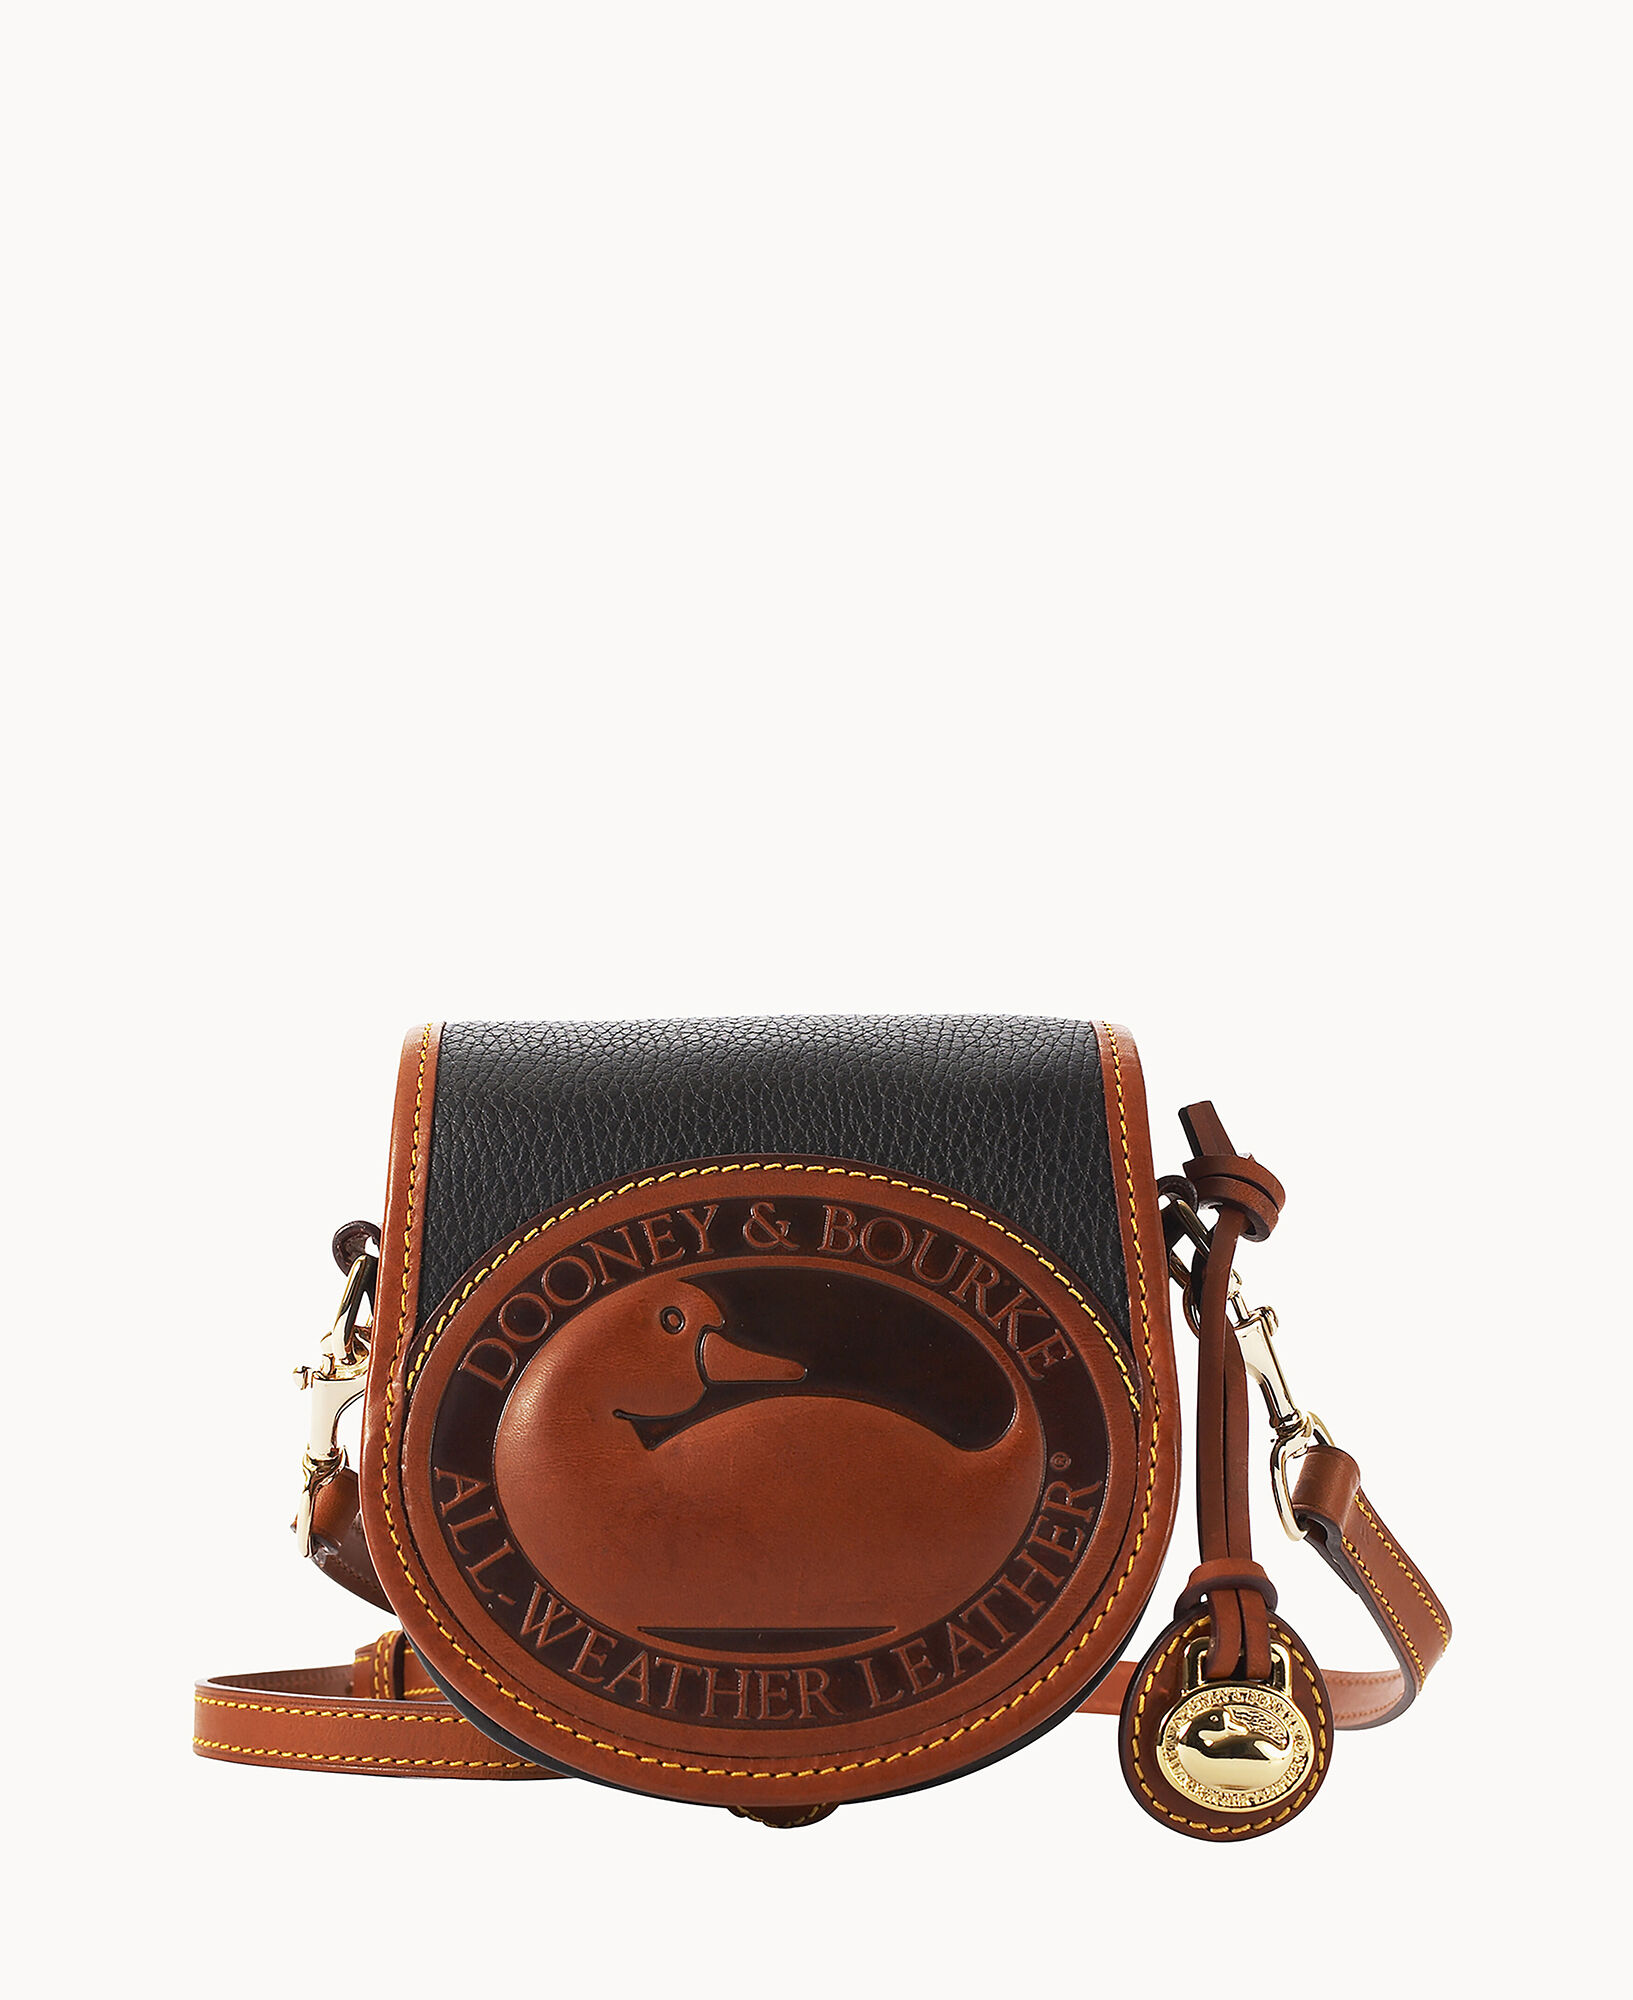 All Black Vintage Dooney & Bourke Carrier Handbag : All-Weather-Leather  Black Dooney Carrier Bag 